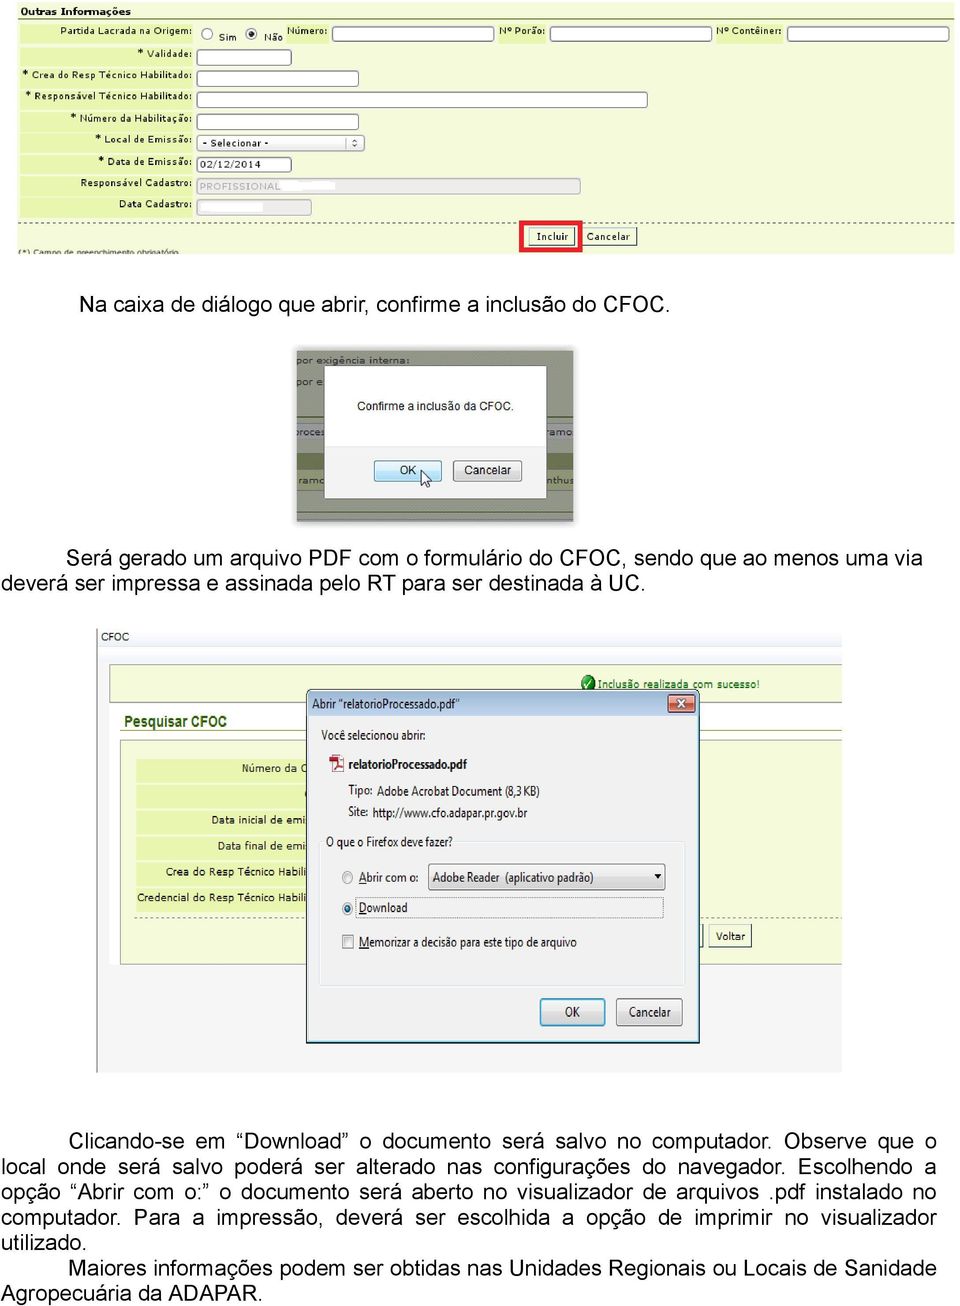 Clicando-se em Download o documento será salvo no computador. Observe que o local onde será salvo poderá ser alterado nas configurações do navegador.